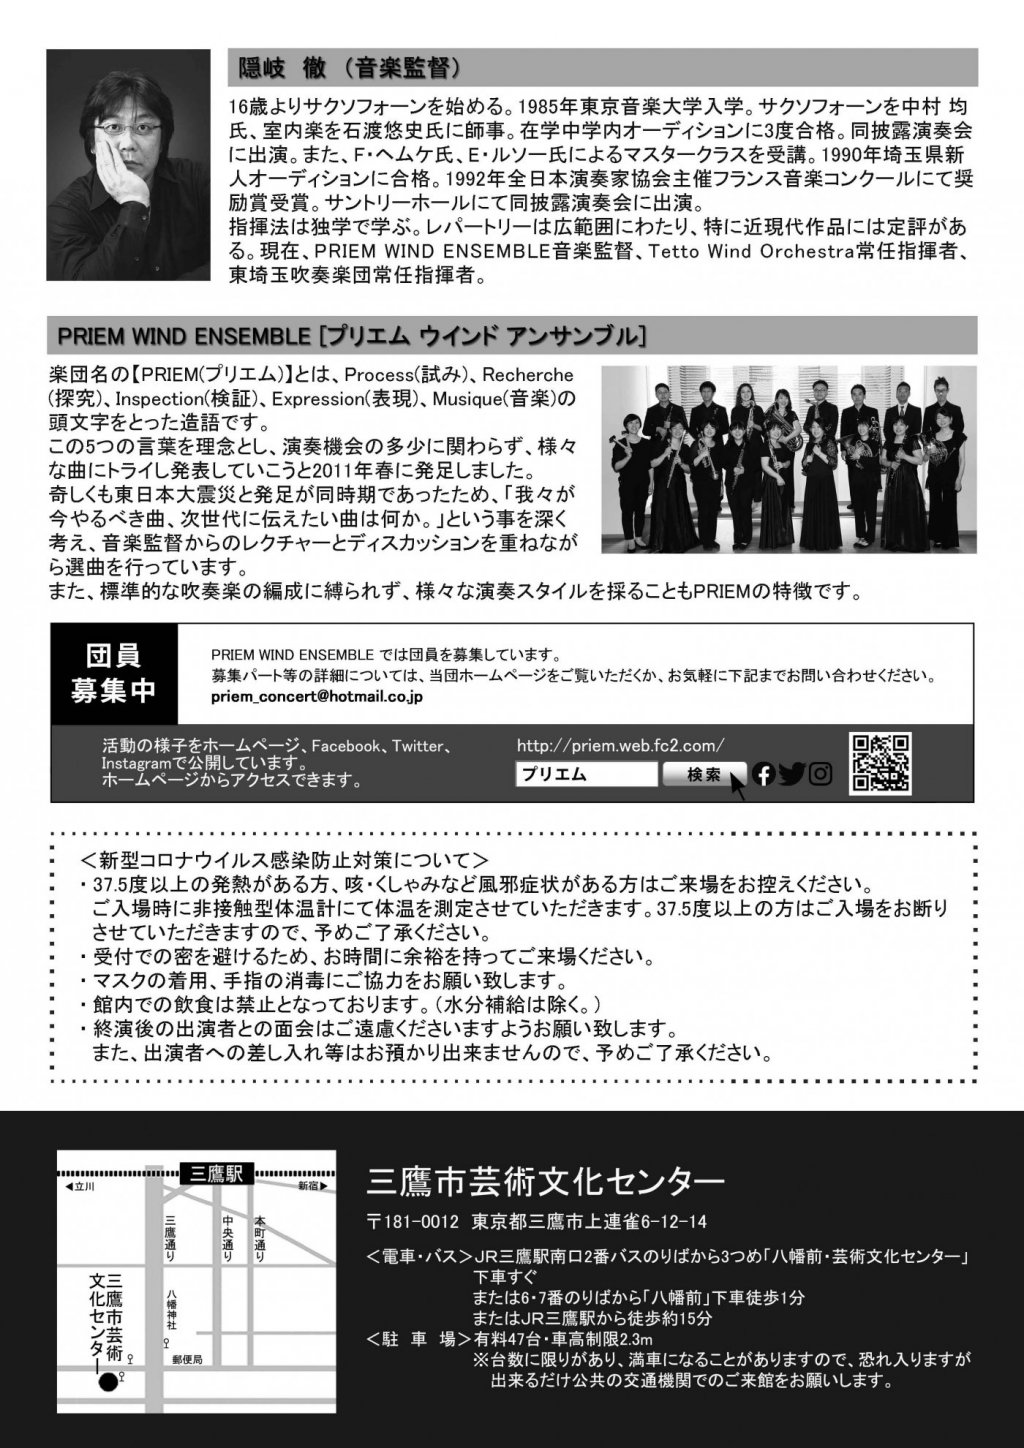 【公演中止】PRIEM WIND ENSEMBLE 第10回演奏会